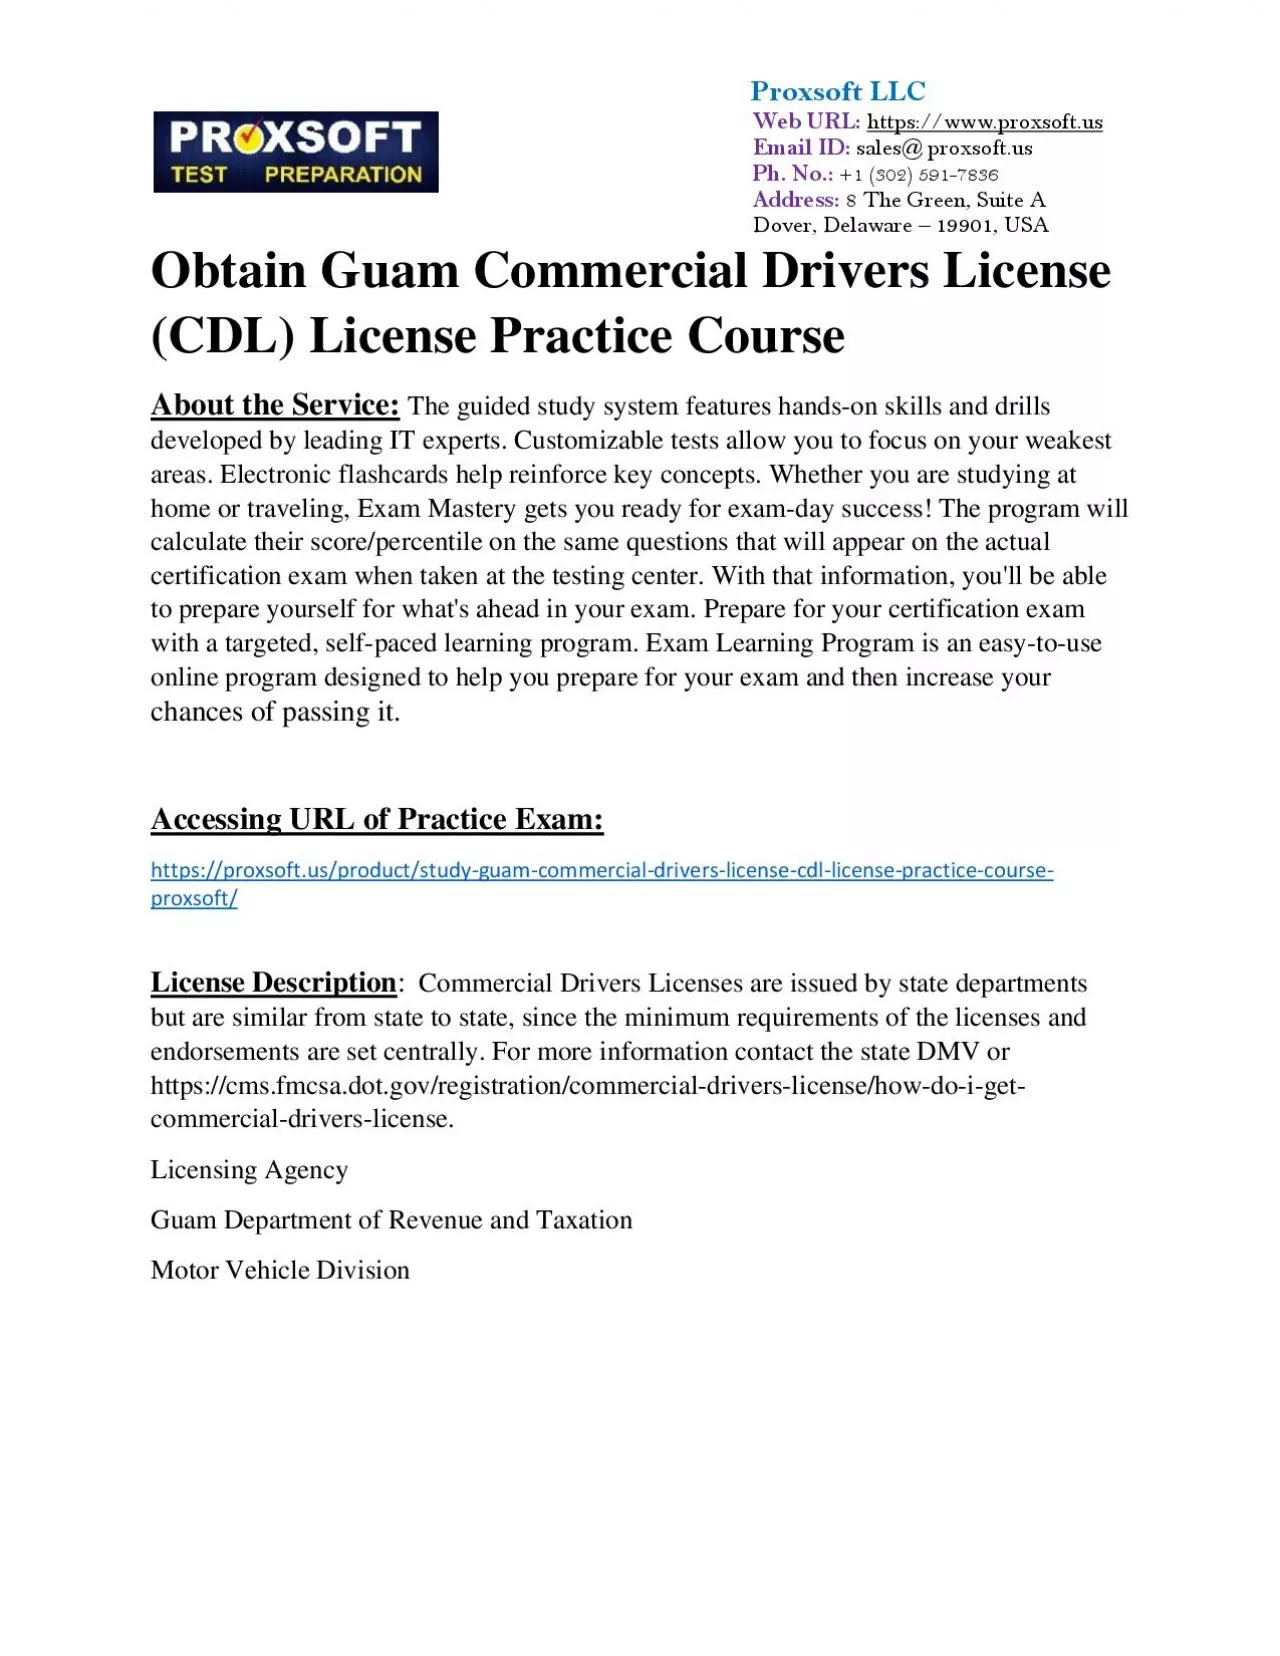 Obtain Guam Commercial Drivers License (CDL) License Practice Course